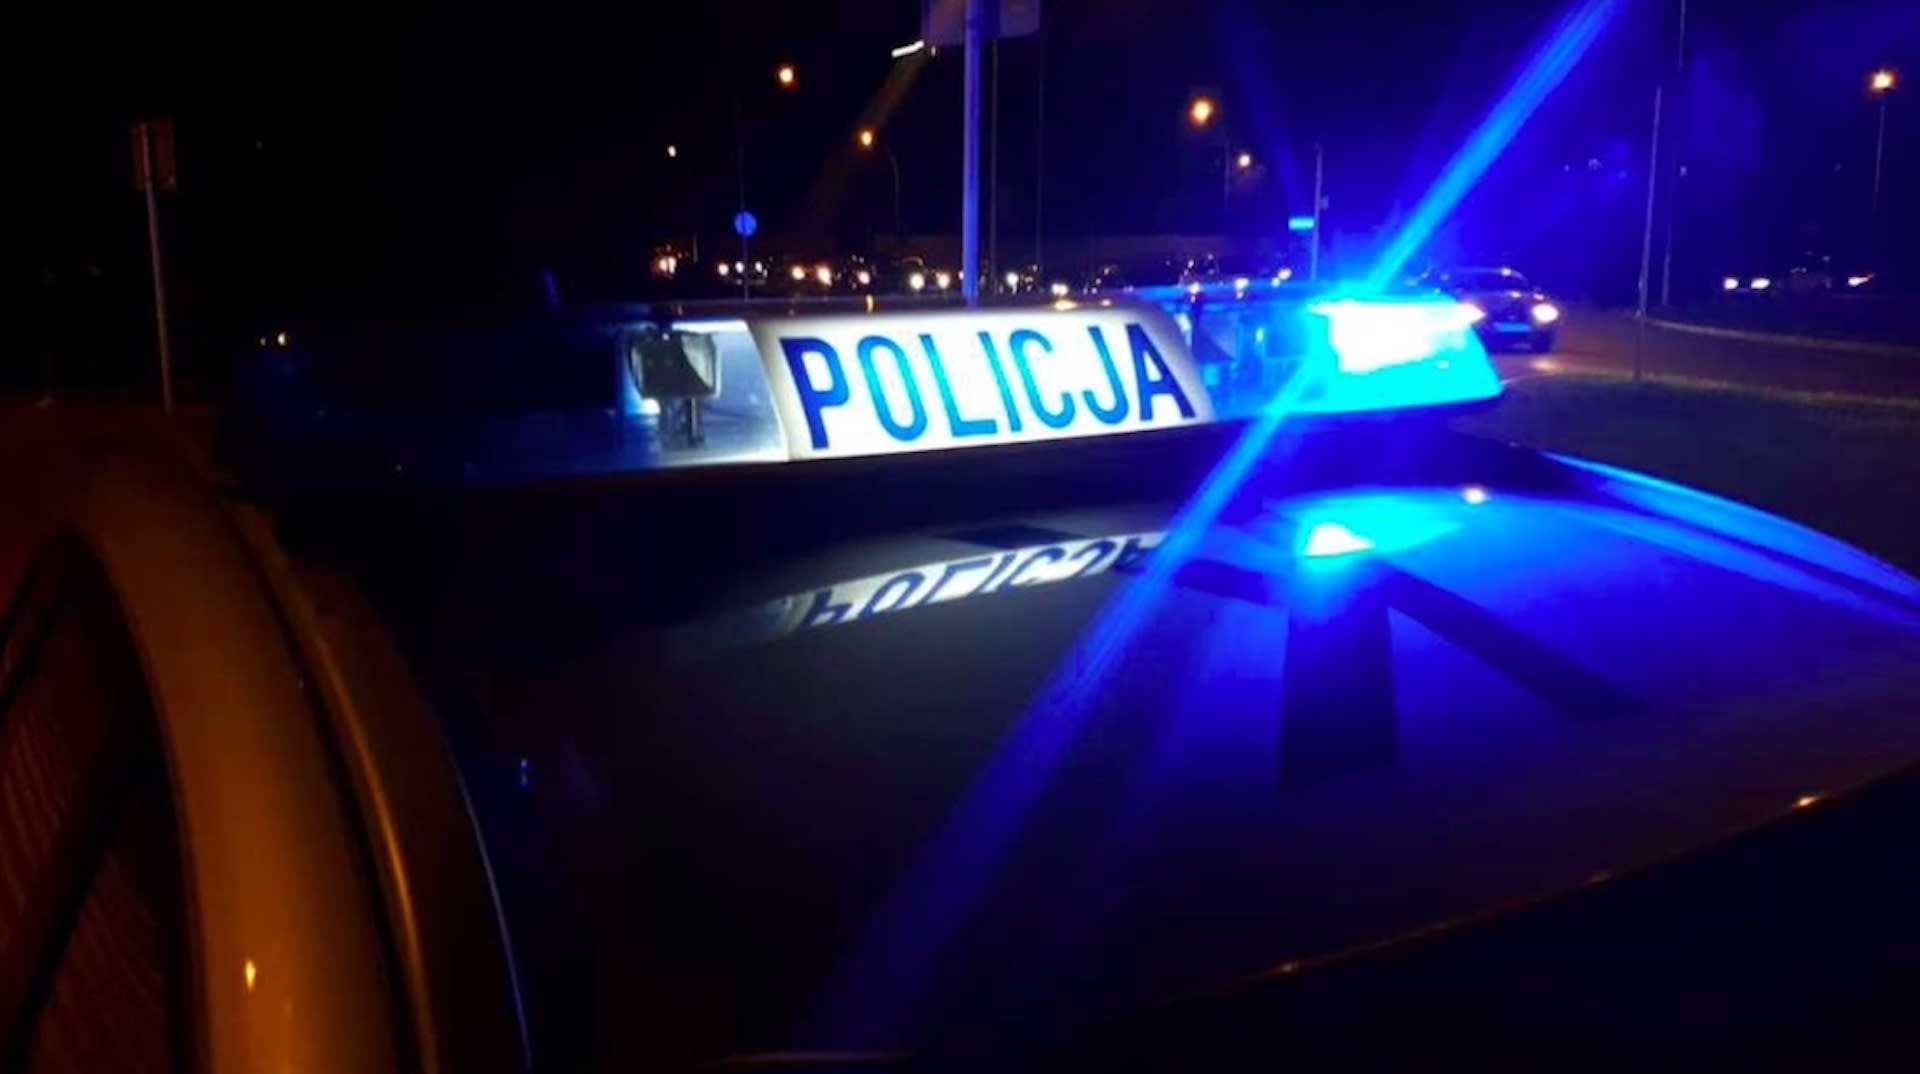 Makabryczny wypadek na trasie Warszawa-Radom, 40-letni kierowca spłonął w aucie